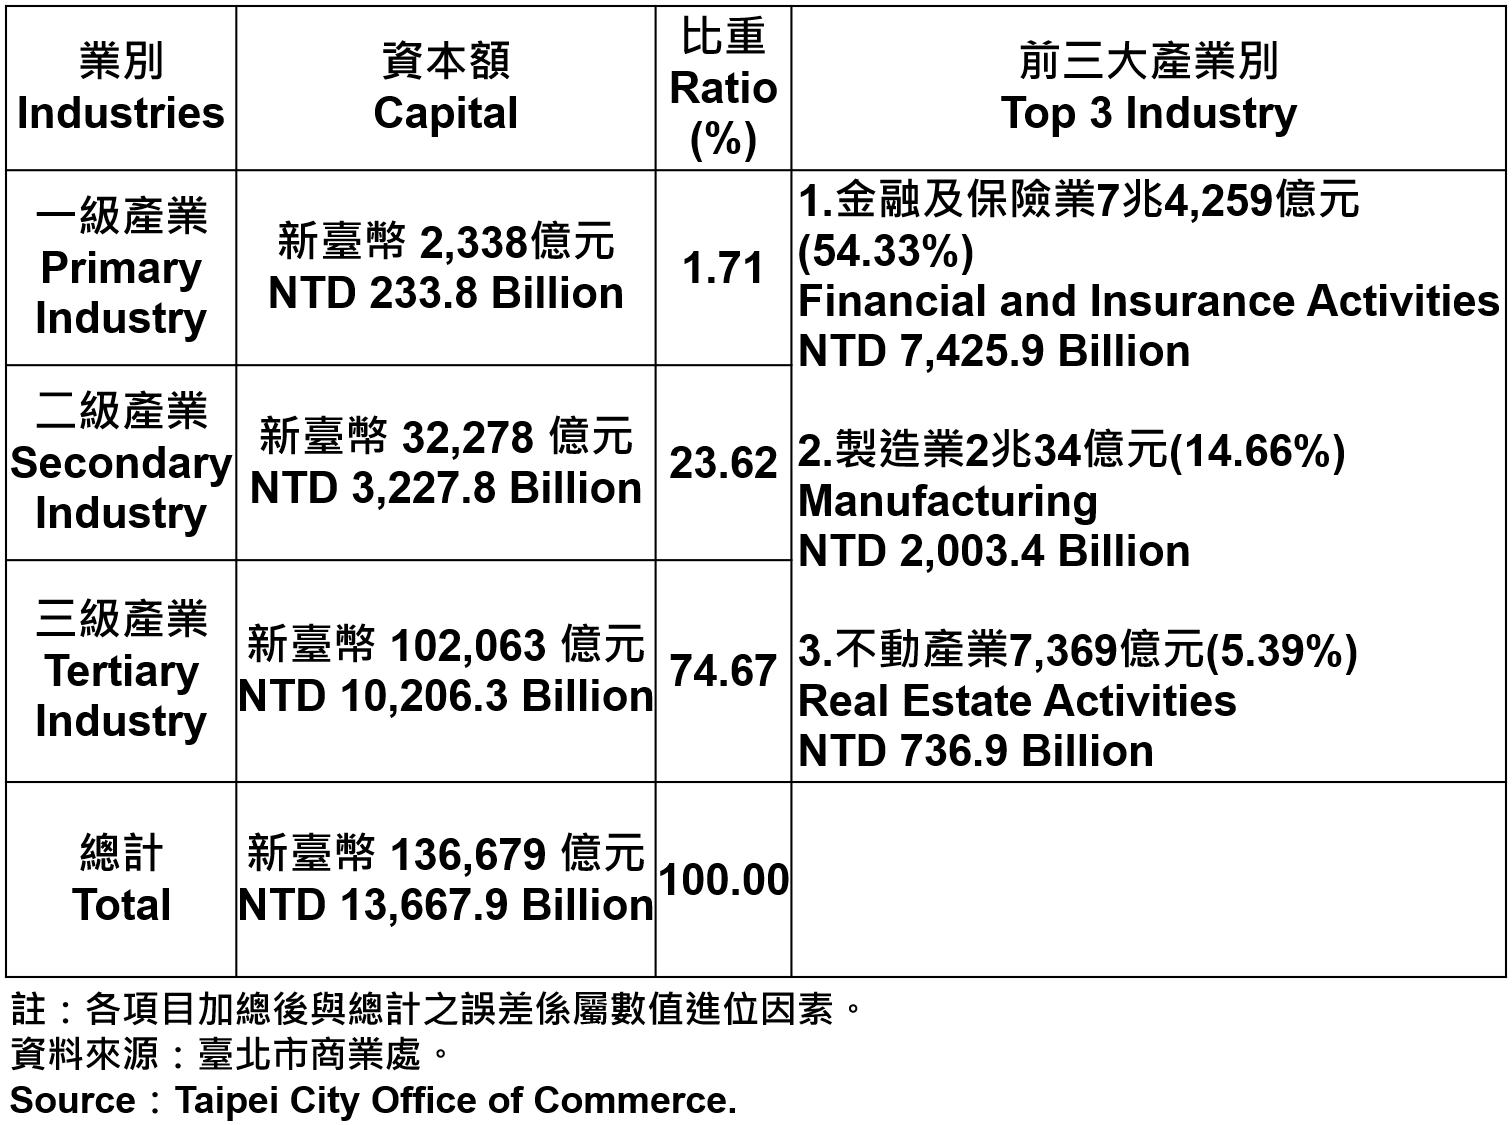 臺北市登記之公司資本總額—2021 Total Capital of the Companies and Firms Registered in Taipei City—2021